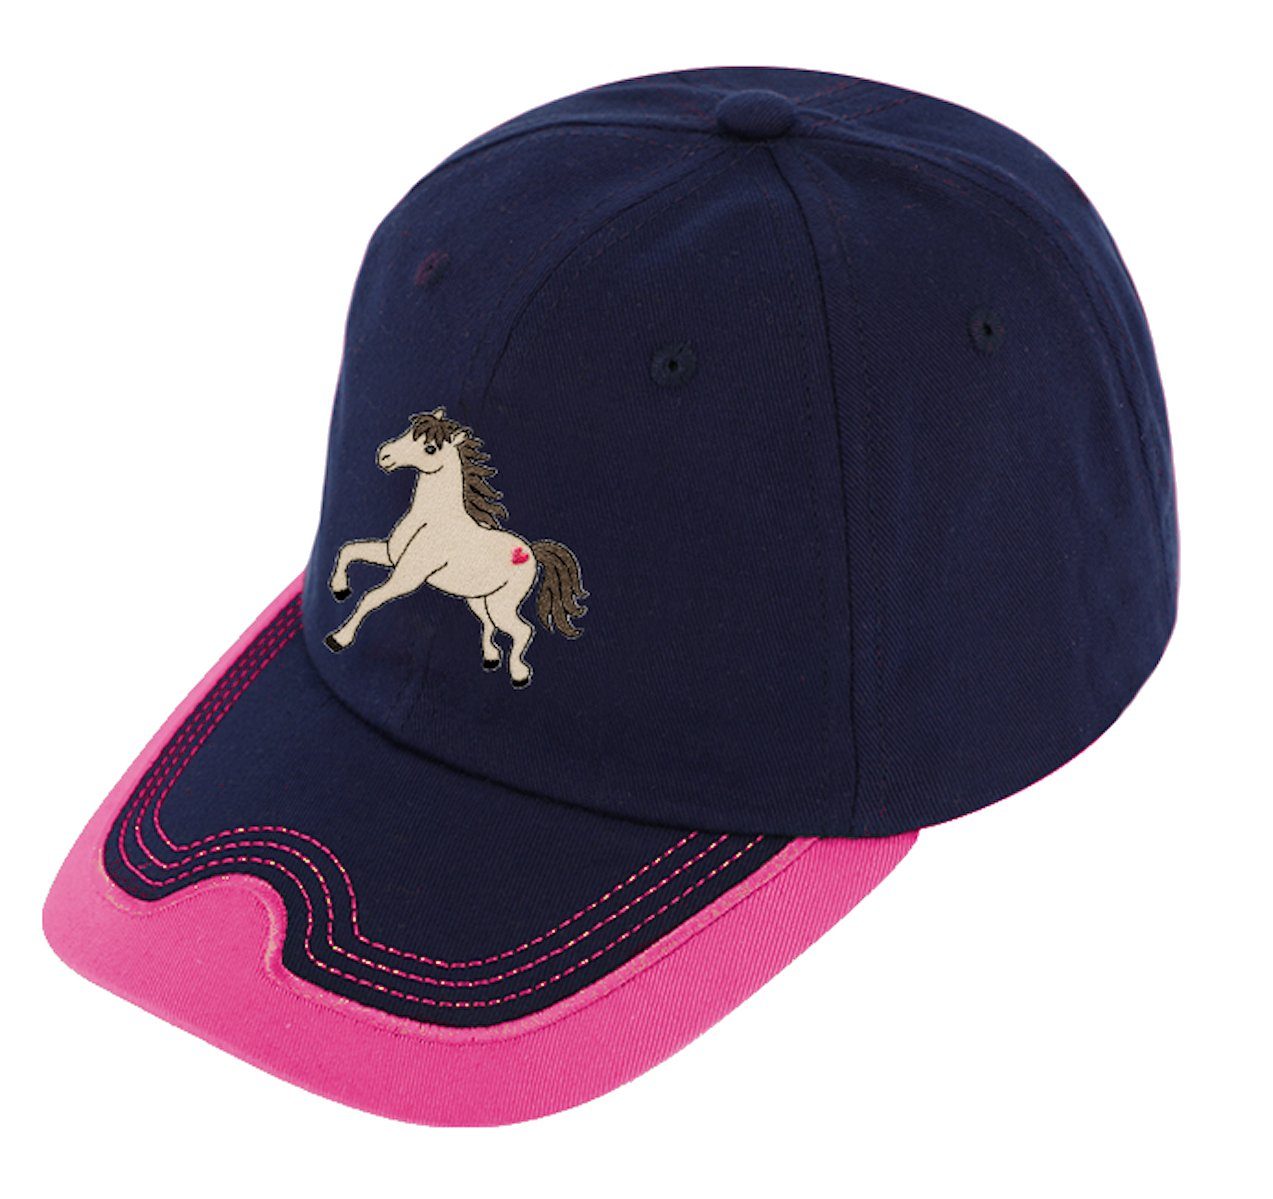 Cap Mädchen Fiebig Fiebig Pferde Baseball cap Mütze pink Basecap Baseballcap Pferd marine